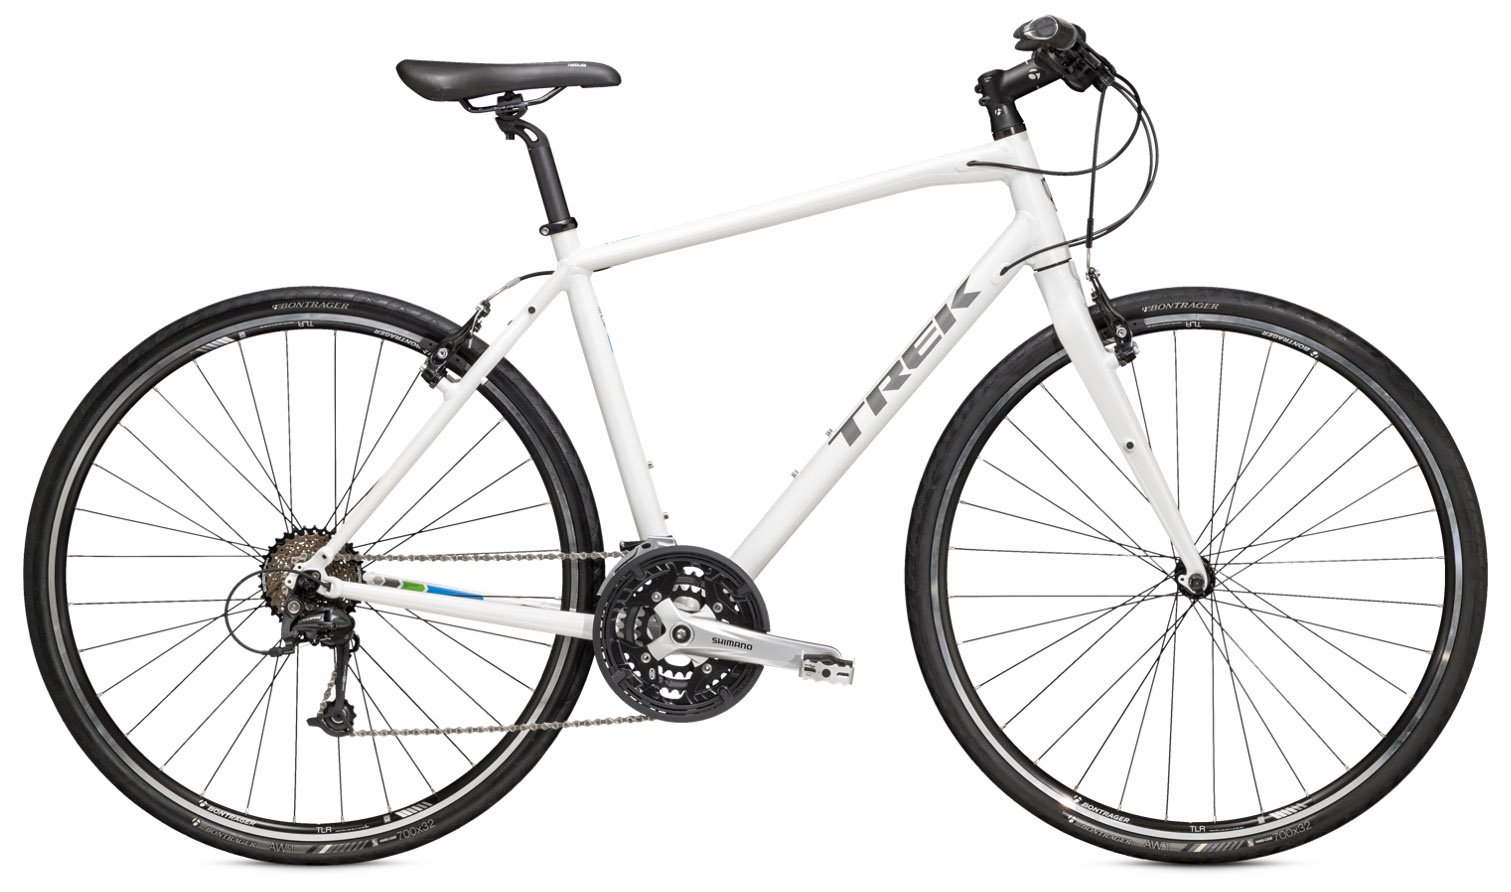  Отзывы о Велосипеде Trek 7.4 FX 2015